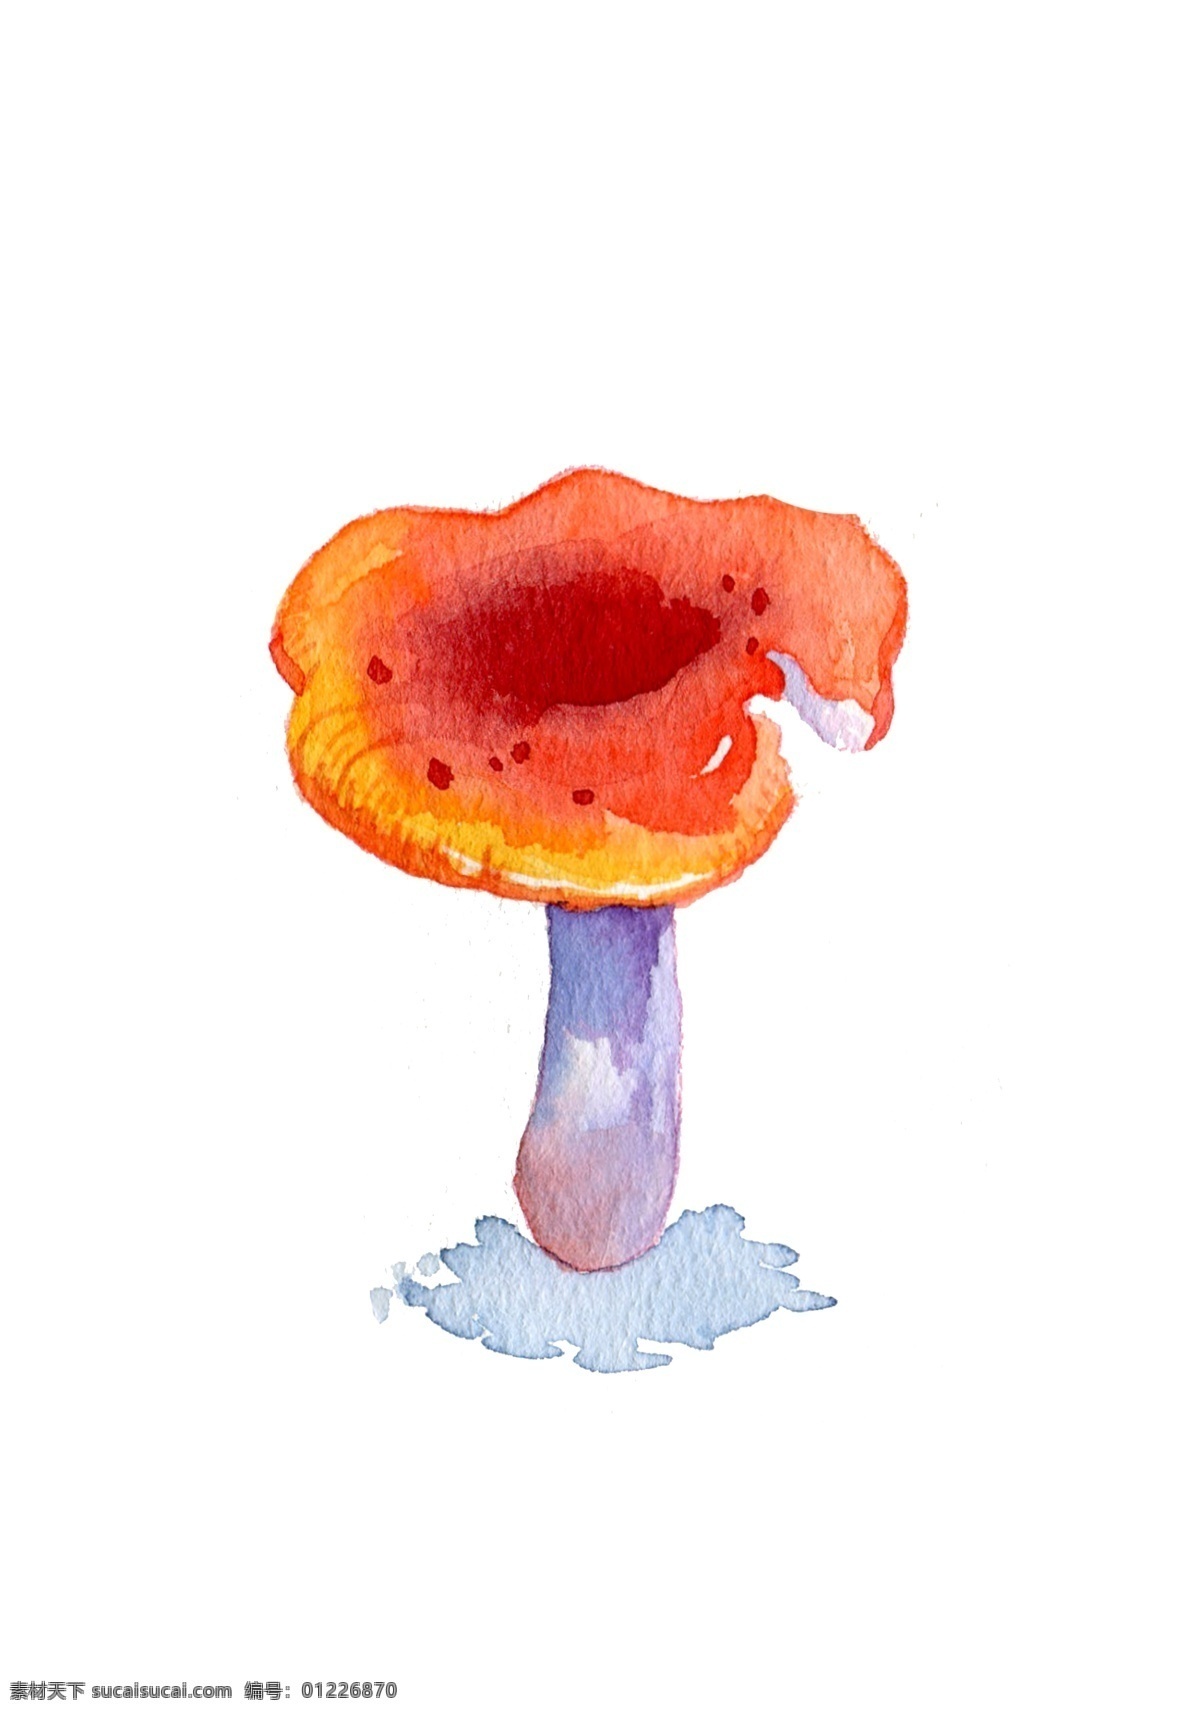 菌类 蔬菜 蘑菇 食物 卡通 手绘 秋天 秋季 秋日 插画 水彩